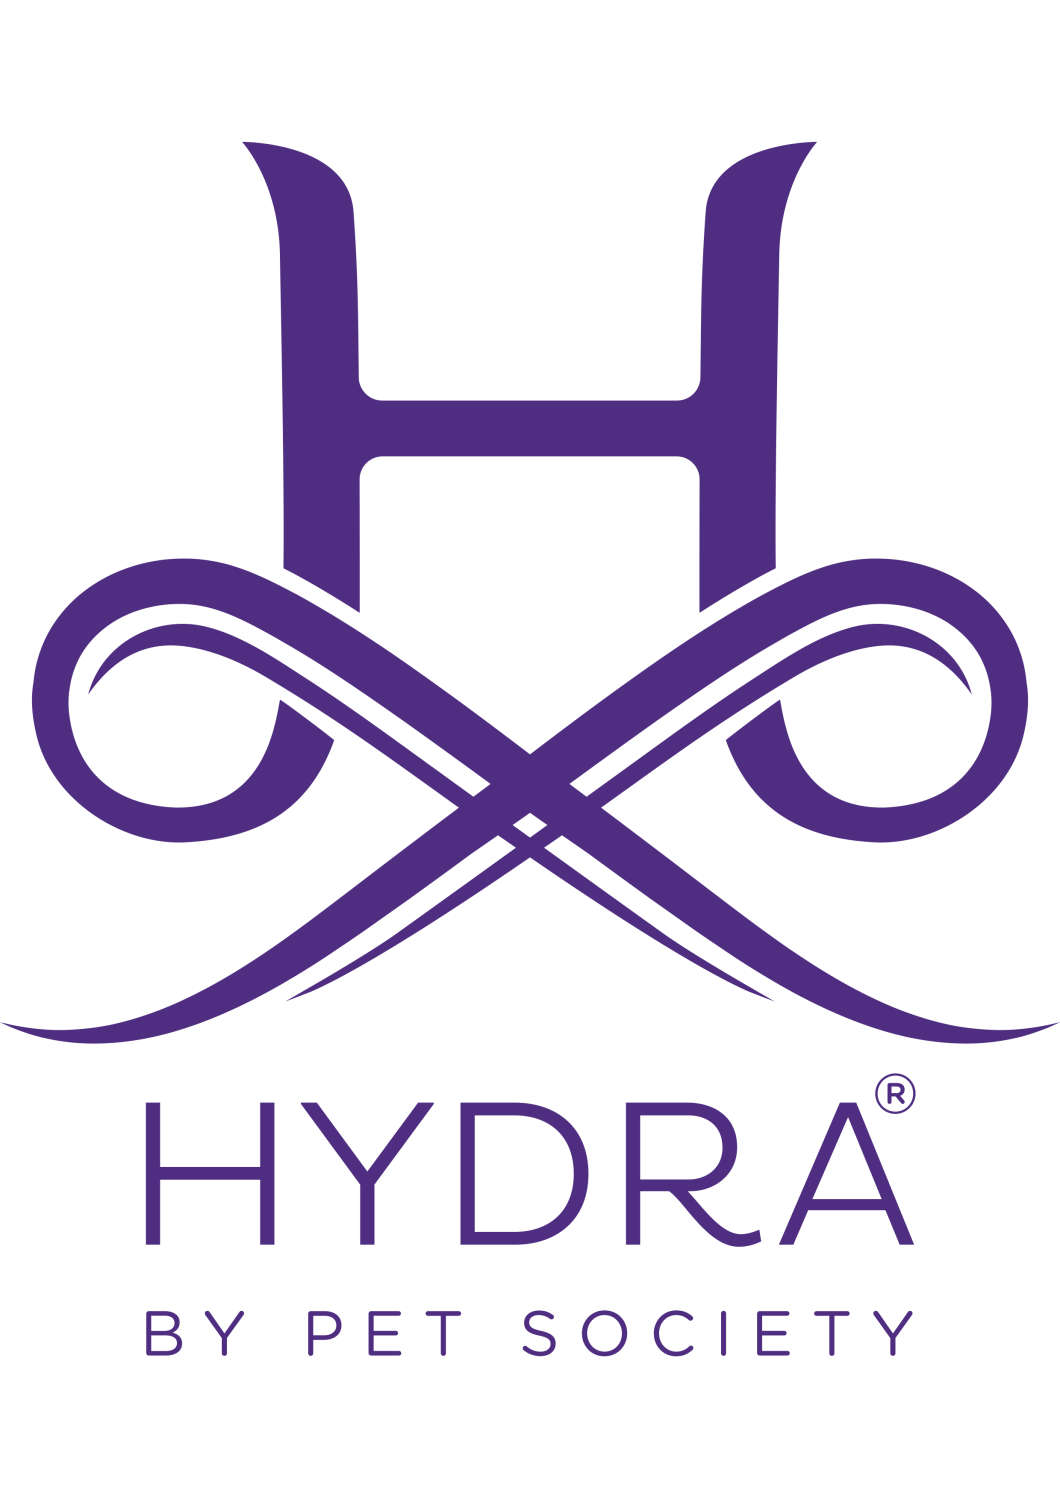 HYDRA - PLANTAR